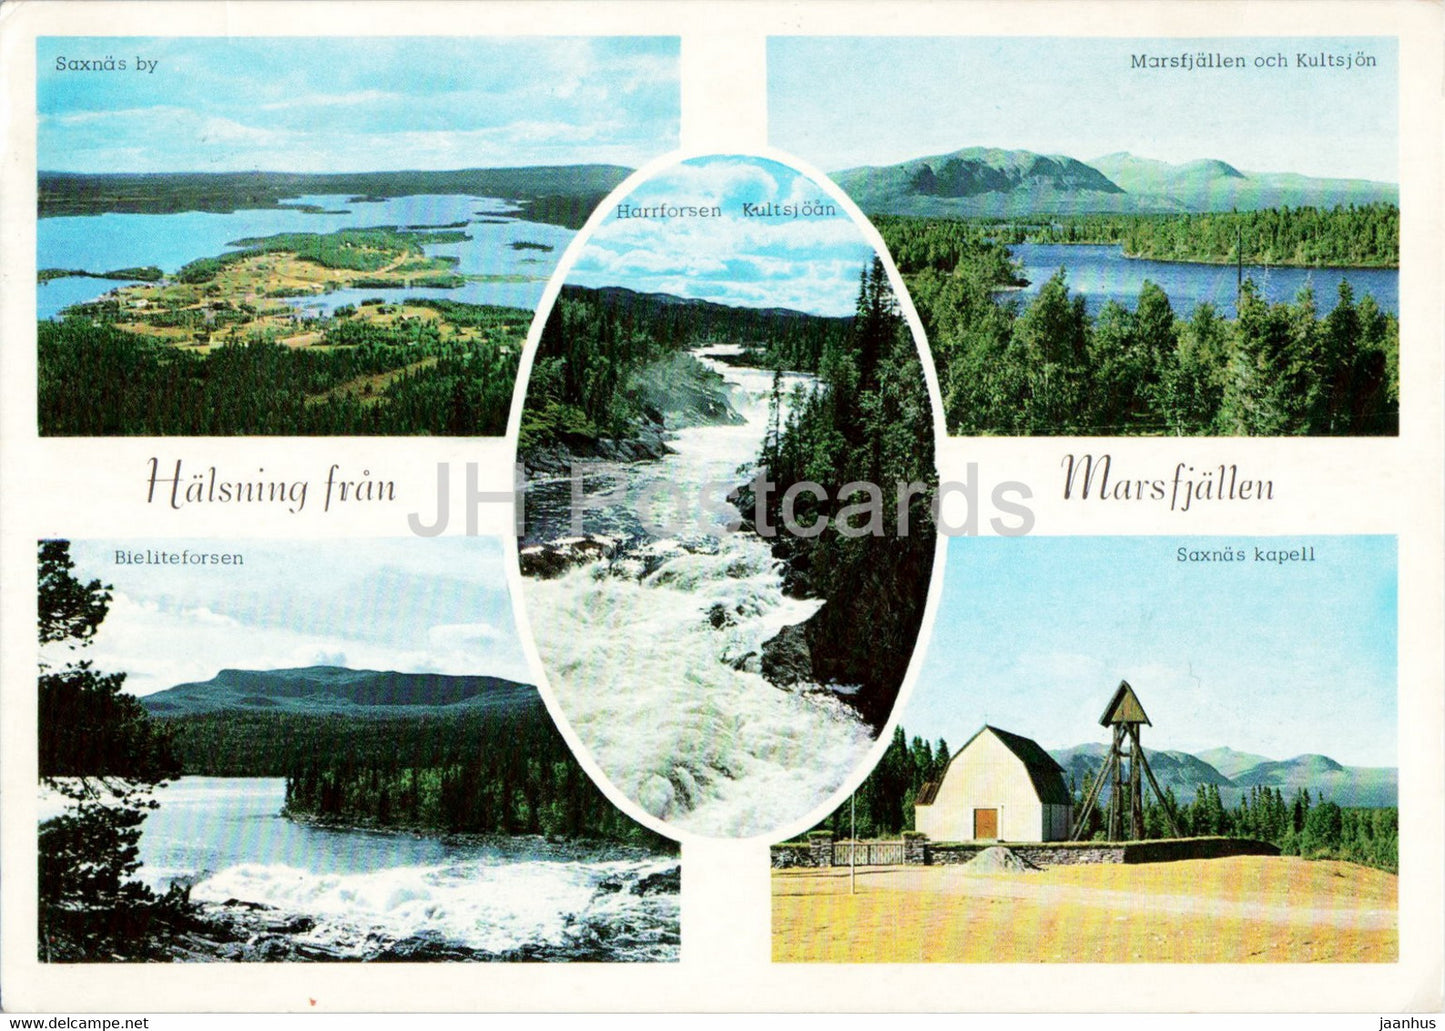 Halsning fran Marsfjallen - 1966 - Sweden - used - JH Postcards